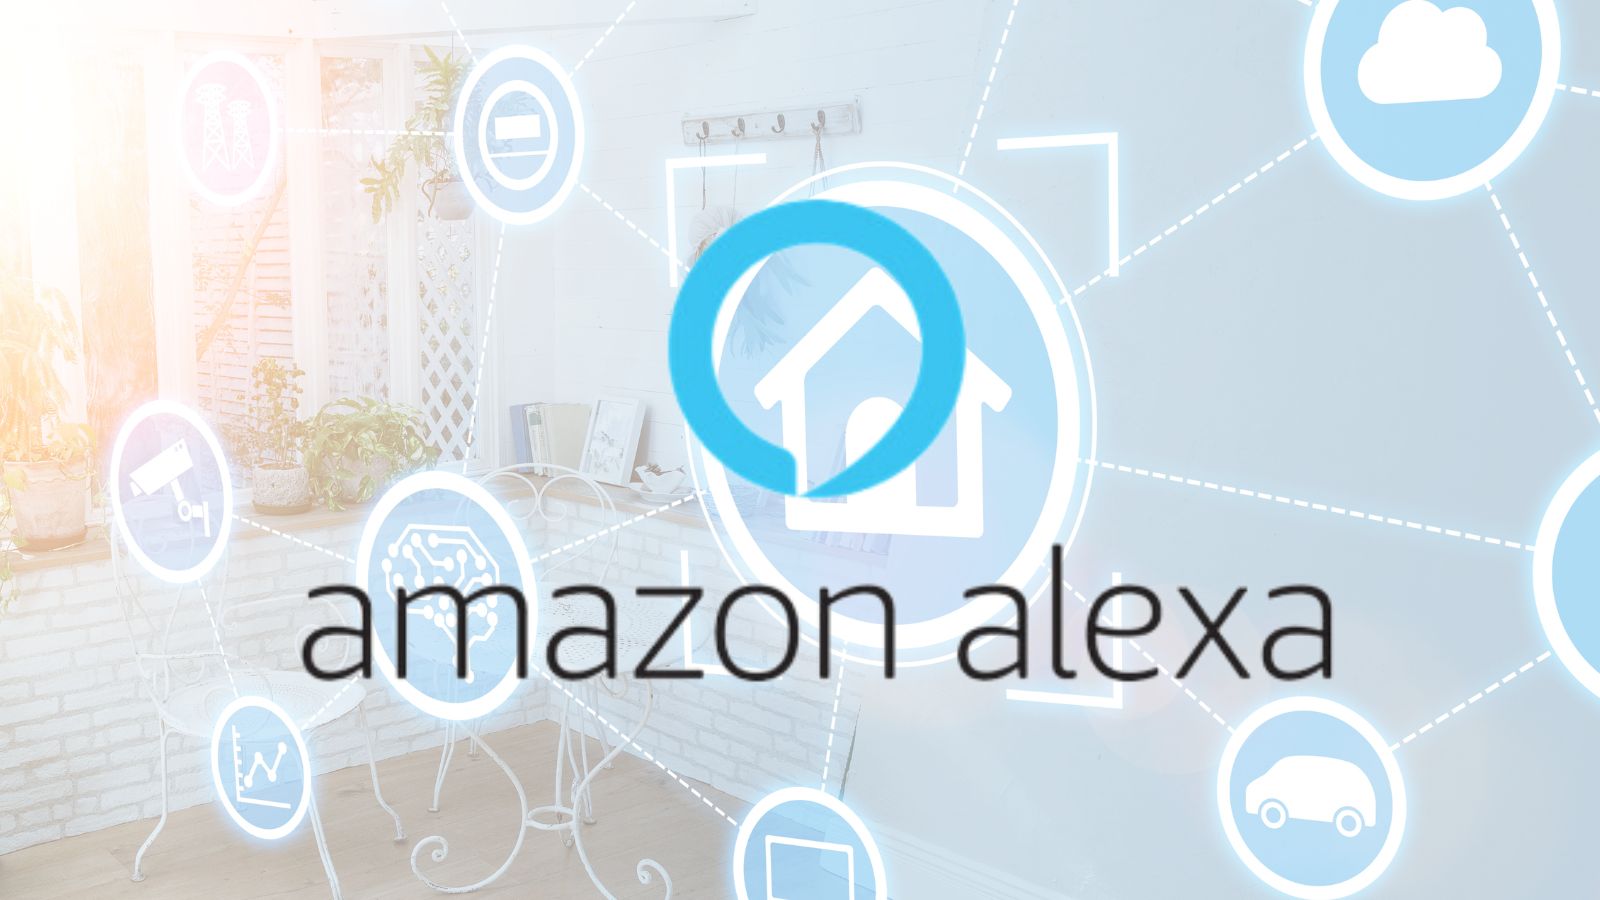 Amazon, come cambierà la Casa Intelligente con Alexa